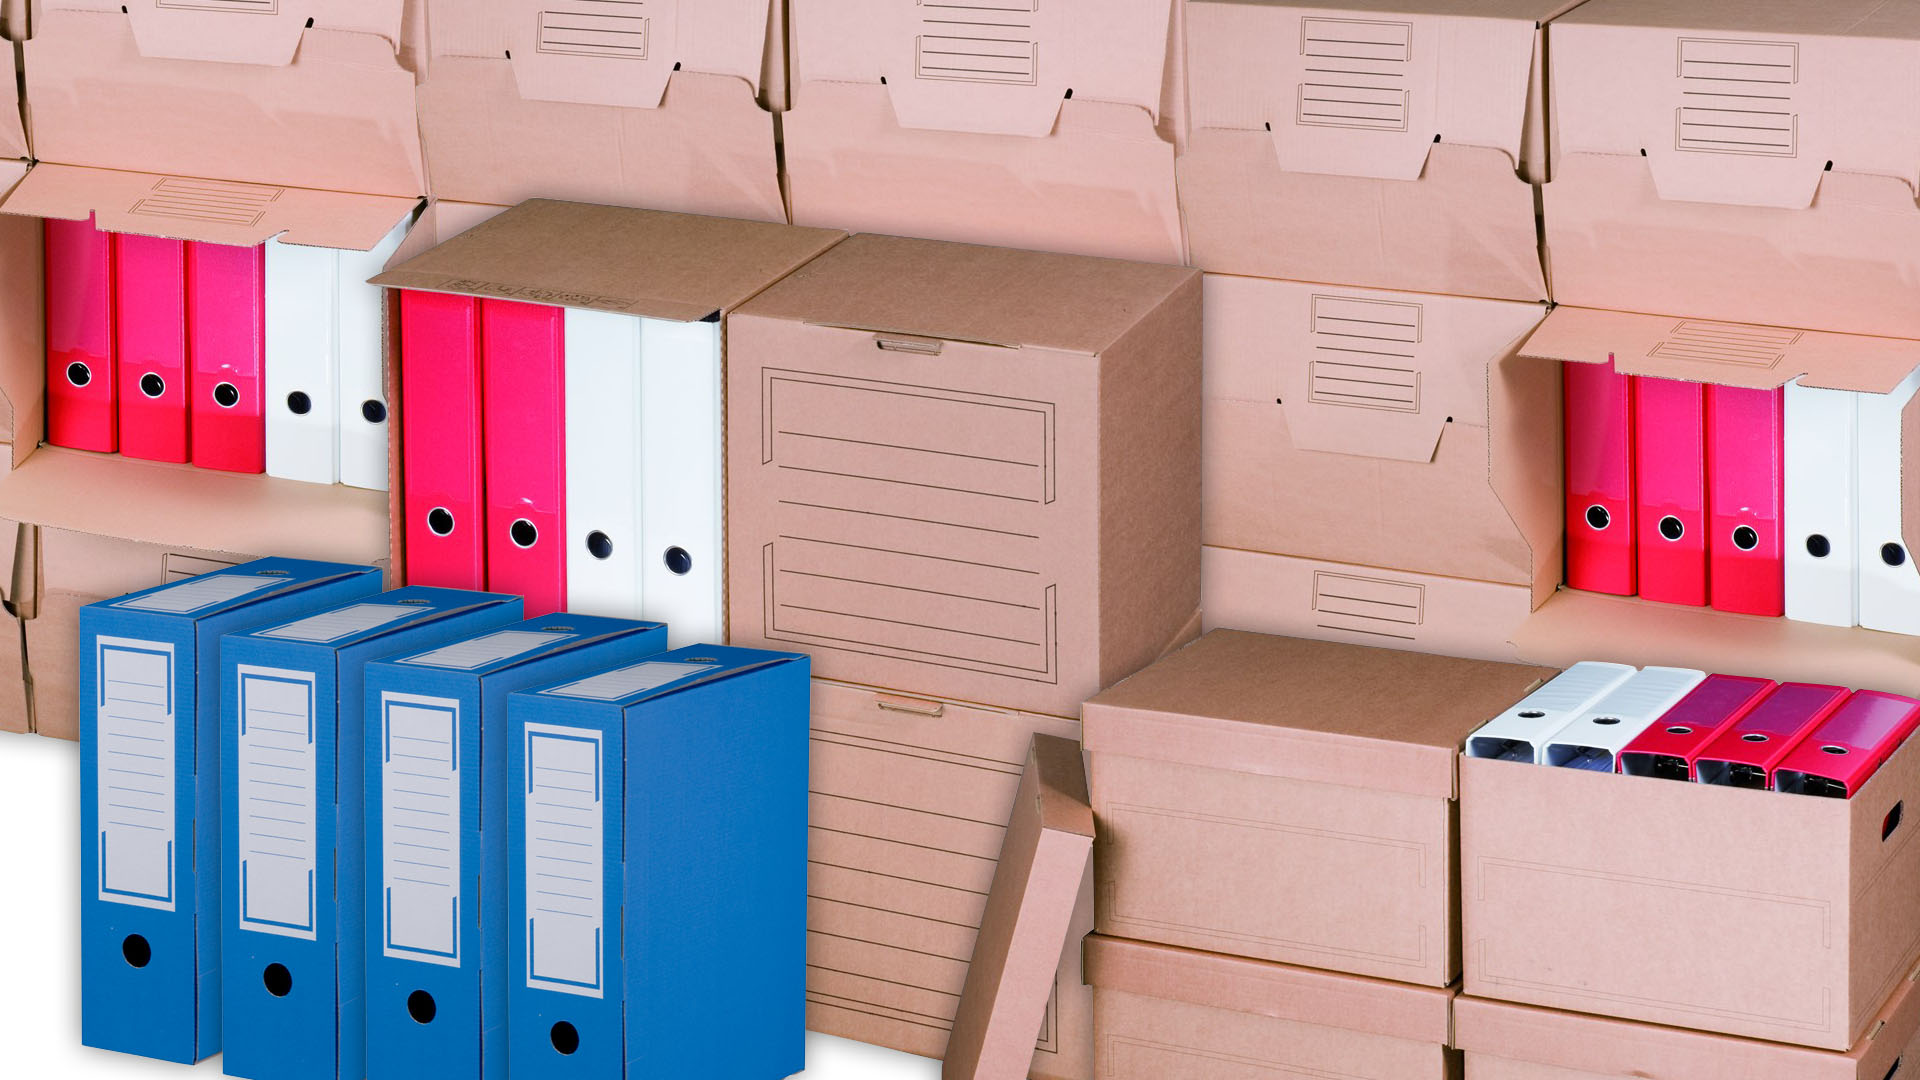 Archivboxen und Archivverpackungen für die langfristige Aufbewahrung von Ordnern, Akten und sonstigem Schriftgut.